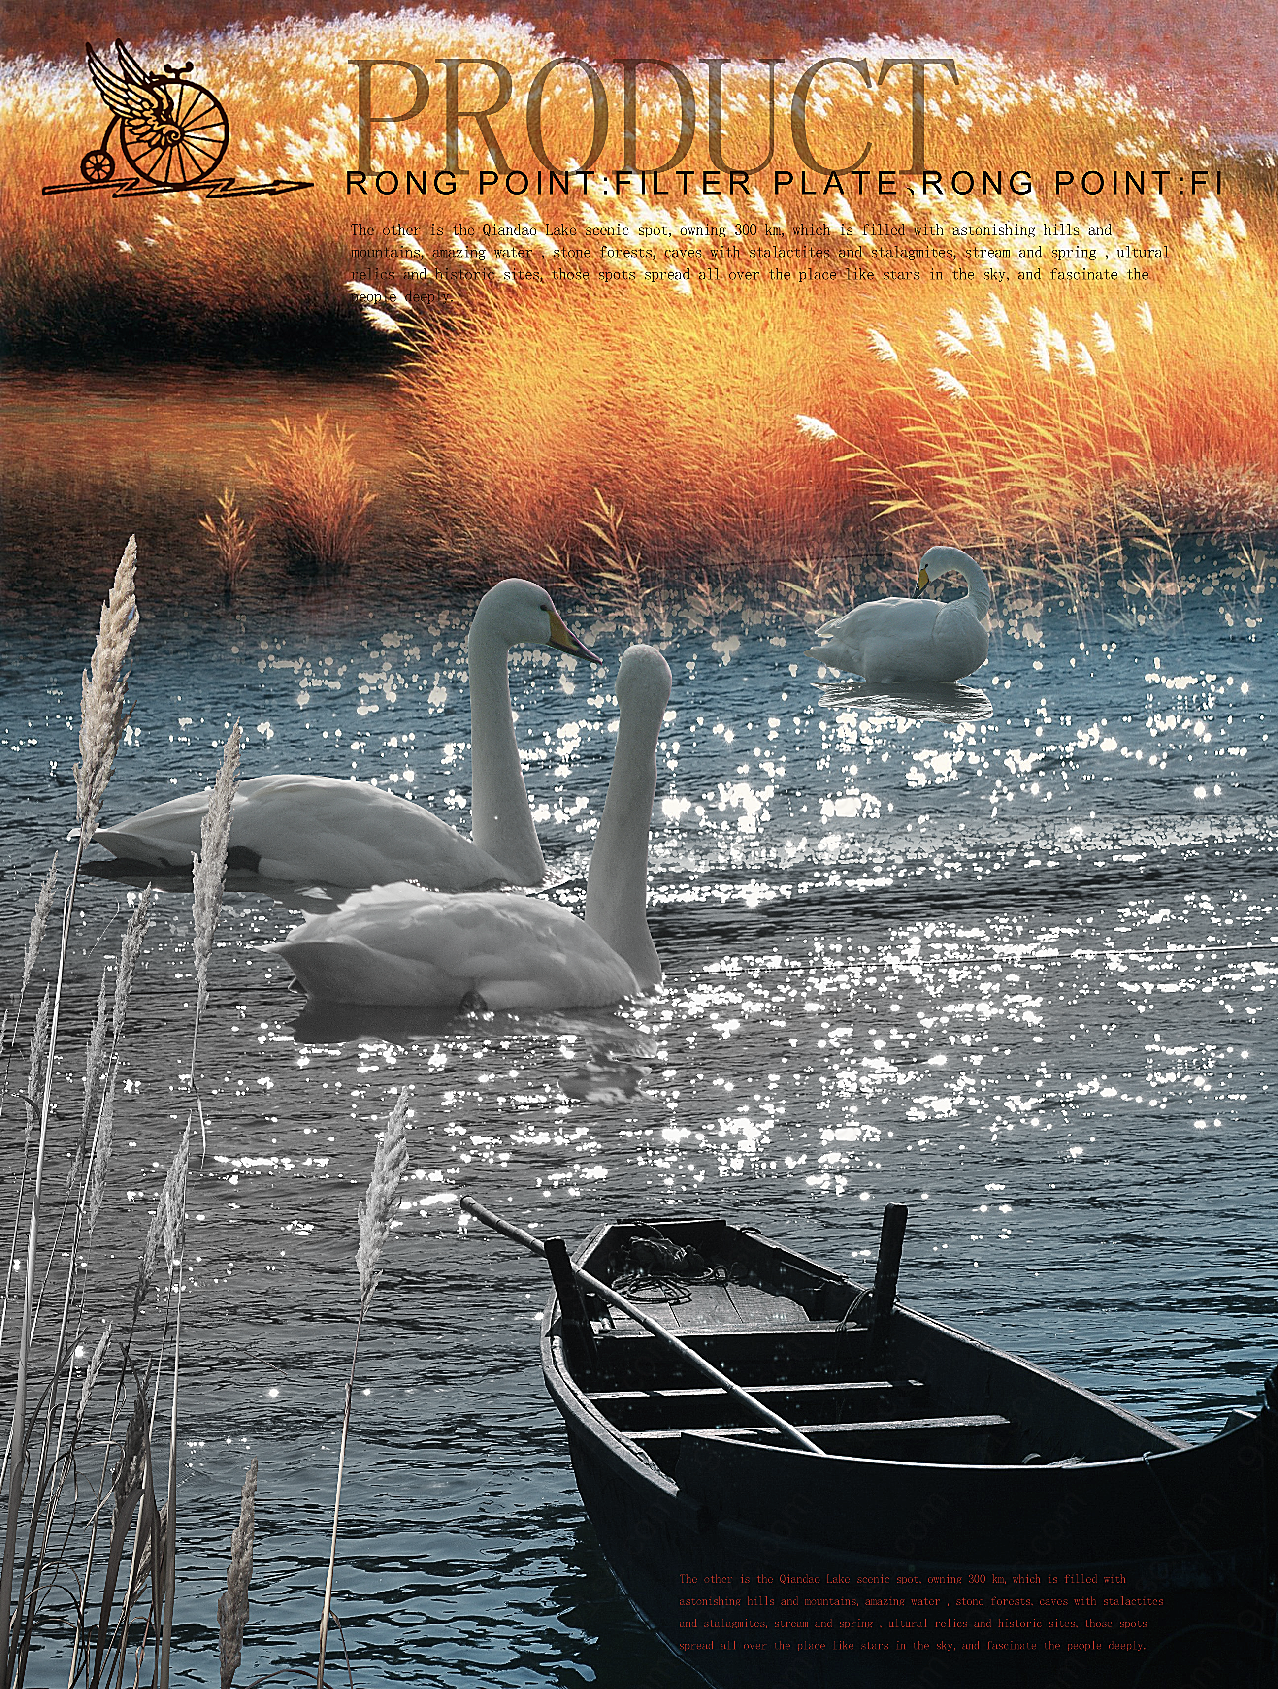 芦苇孤舟天鹅湖广告摄影